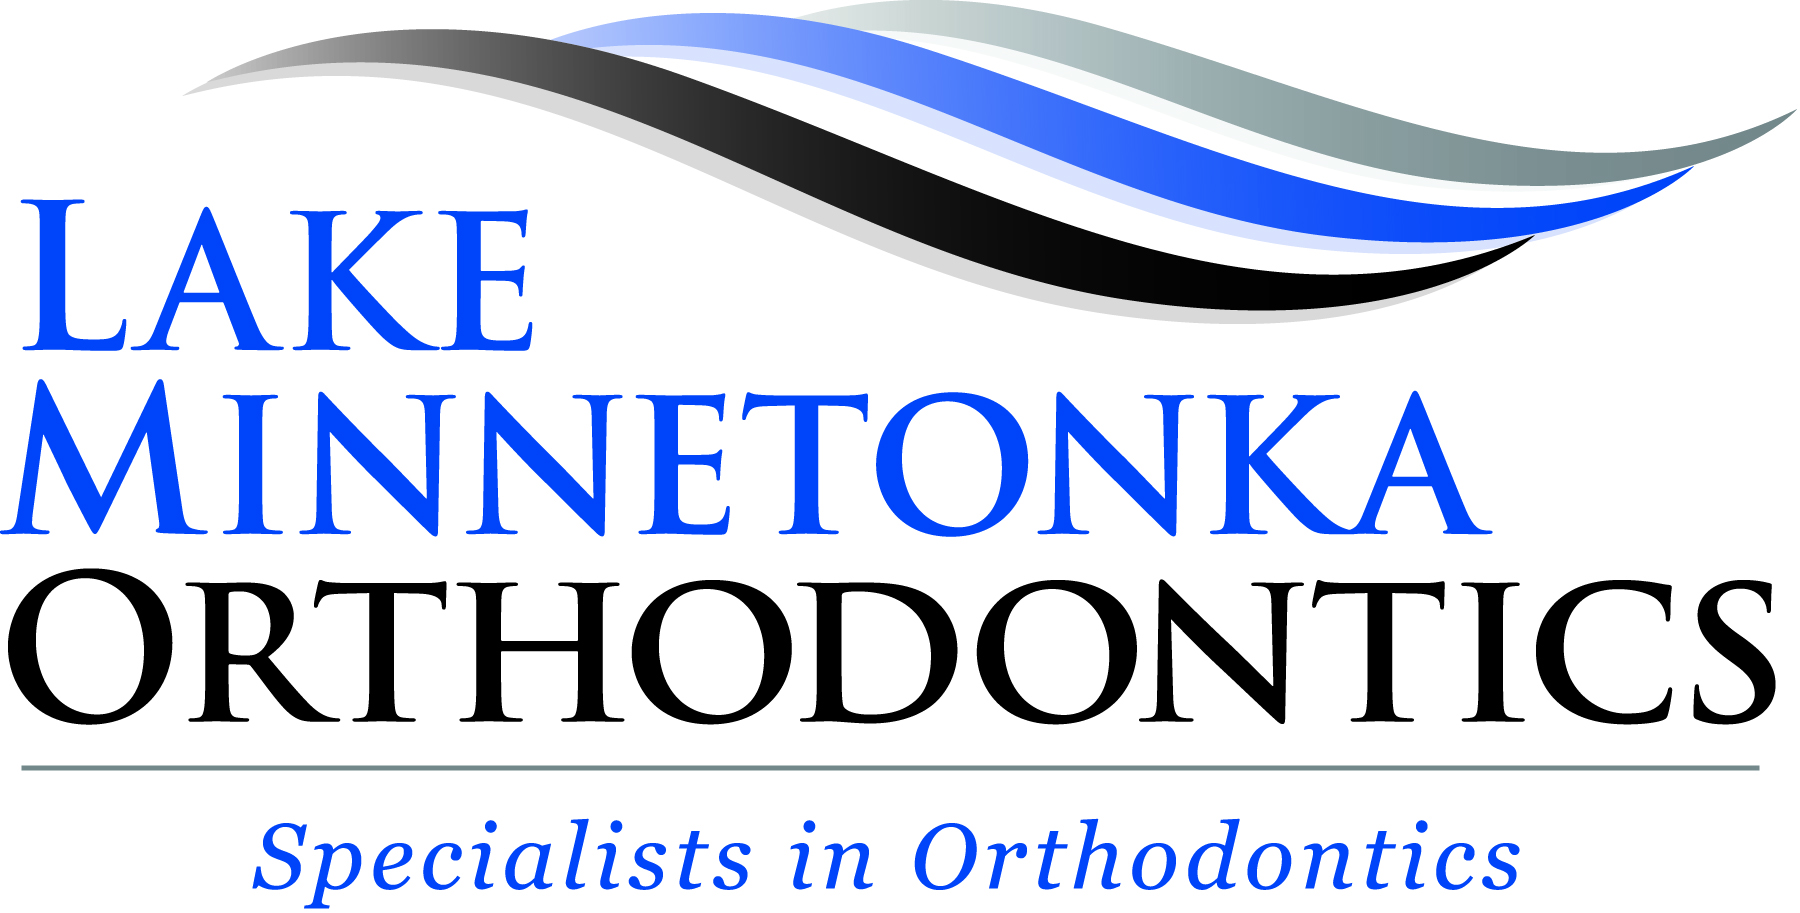 Lake Minnetonka Orthodontics